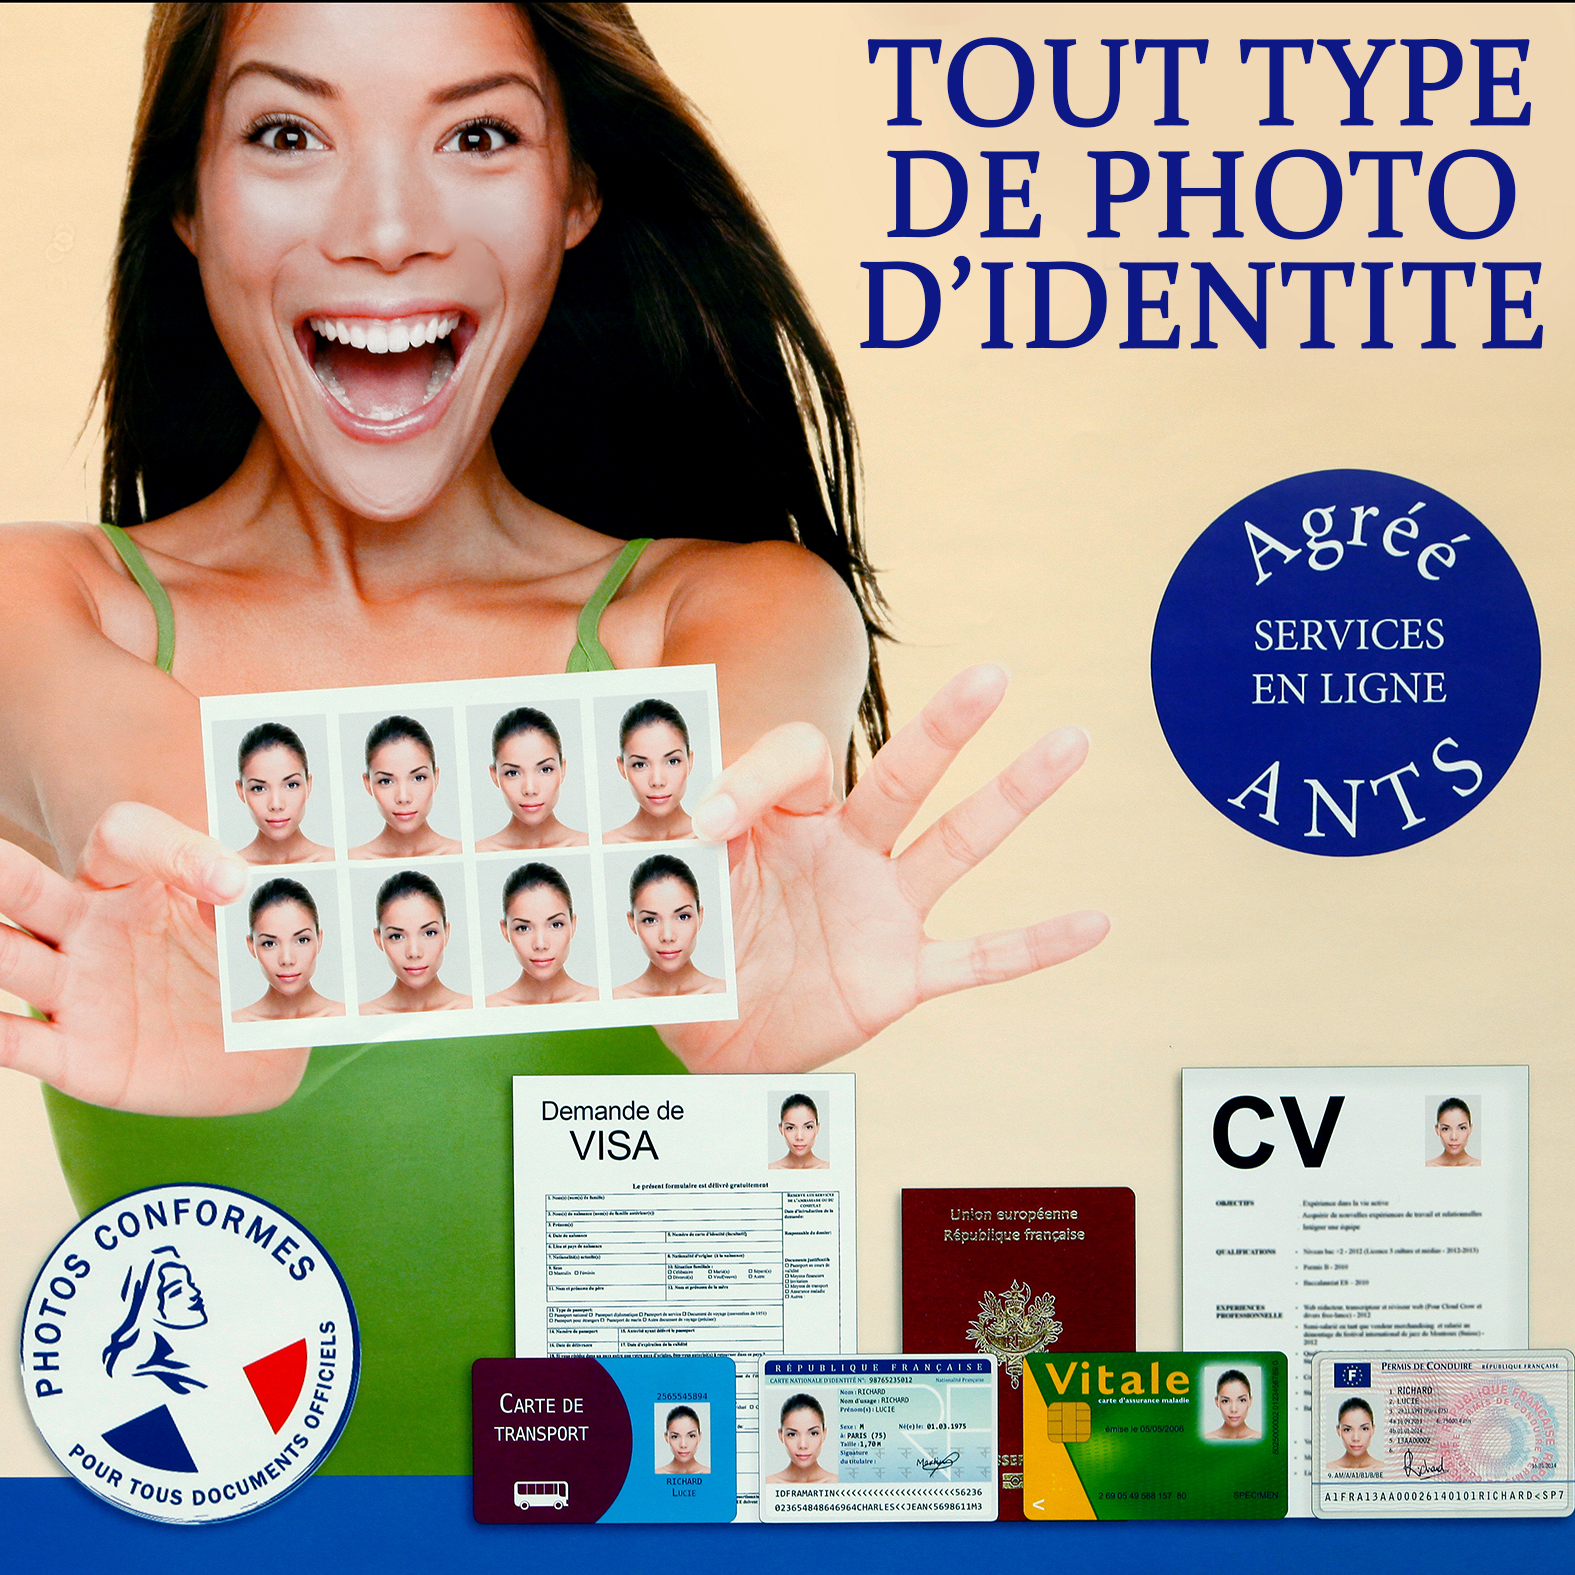 Photo d identité Lambersart - photo d'identité Lille - Visa Lille - normes officielles - Photo agréée ANTS